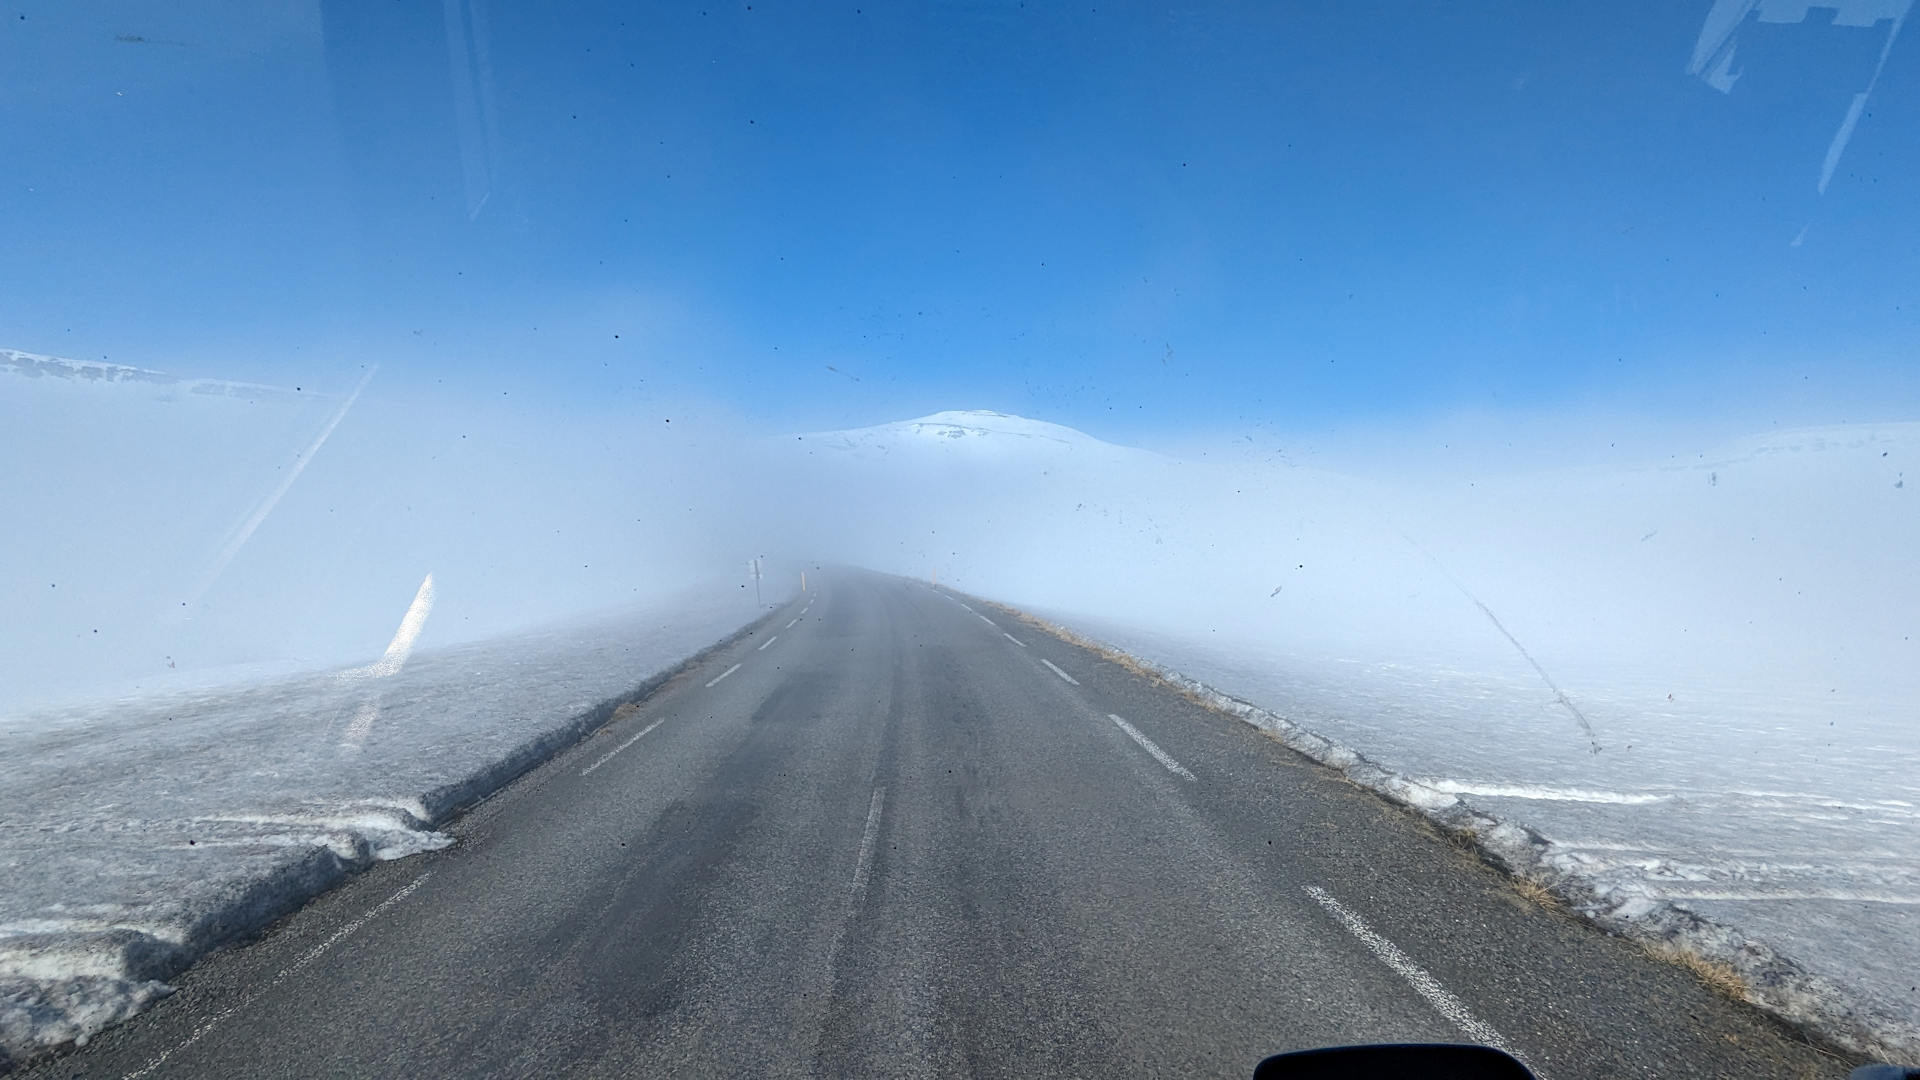 Pass Strasse von Seydisfjördur nach Egilsstadir im Winter mit verschneiten Bergen